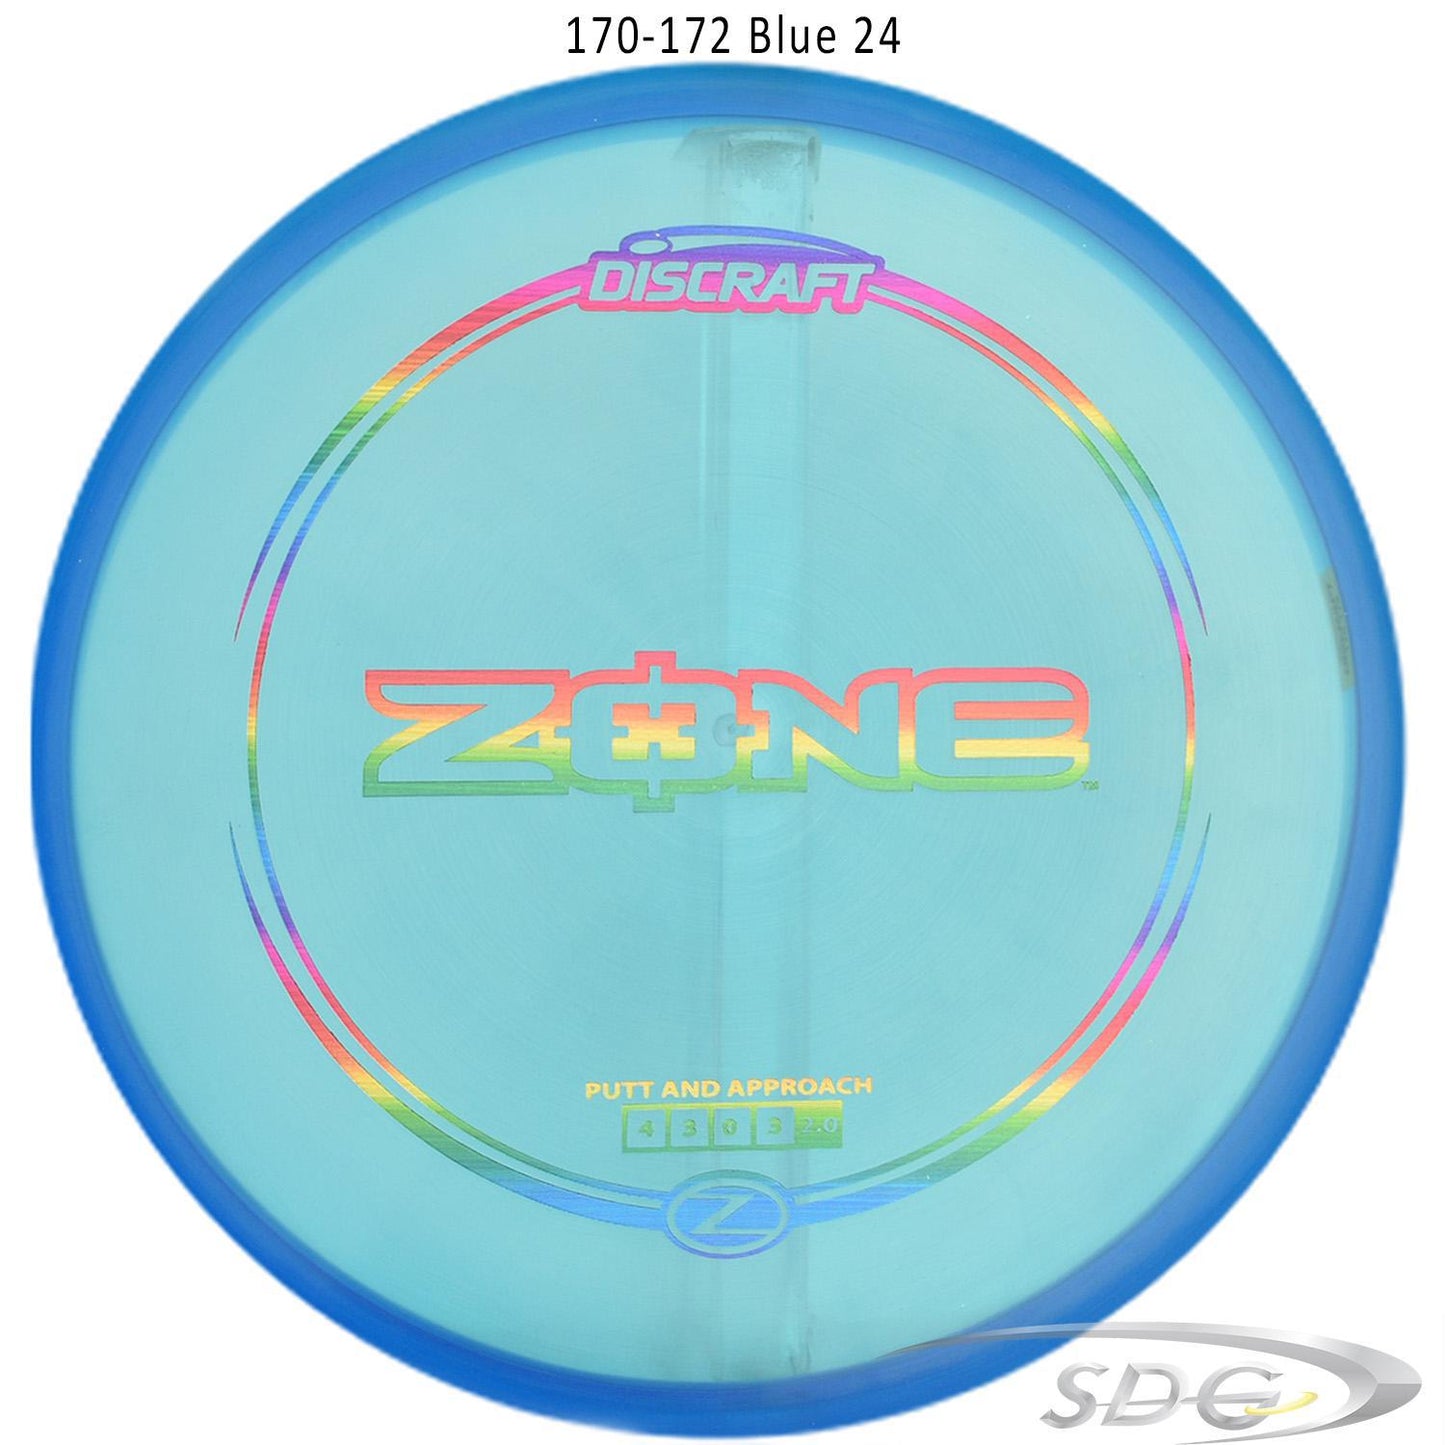 discraft-z-line-zone-disc-golf-putter 170-172 Blue 24